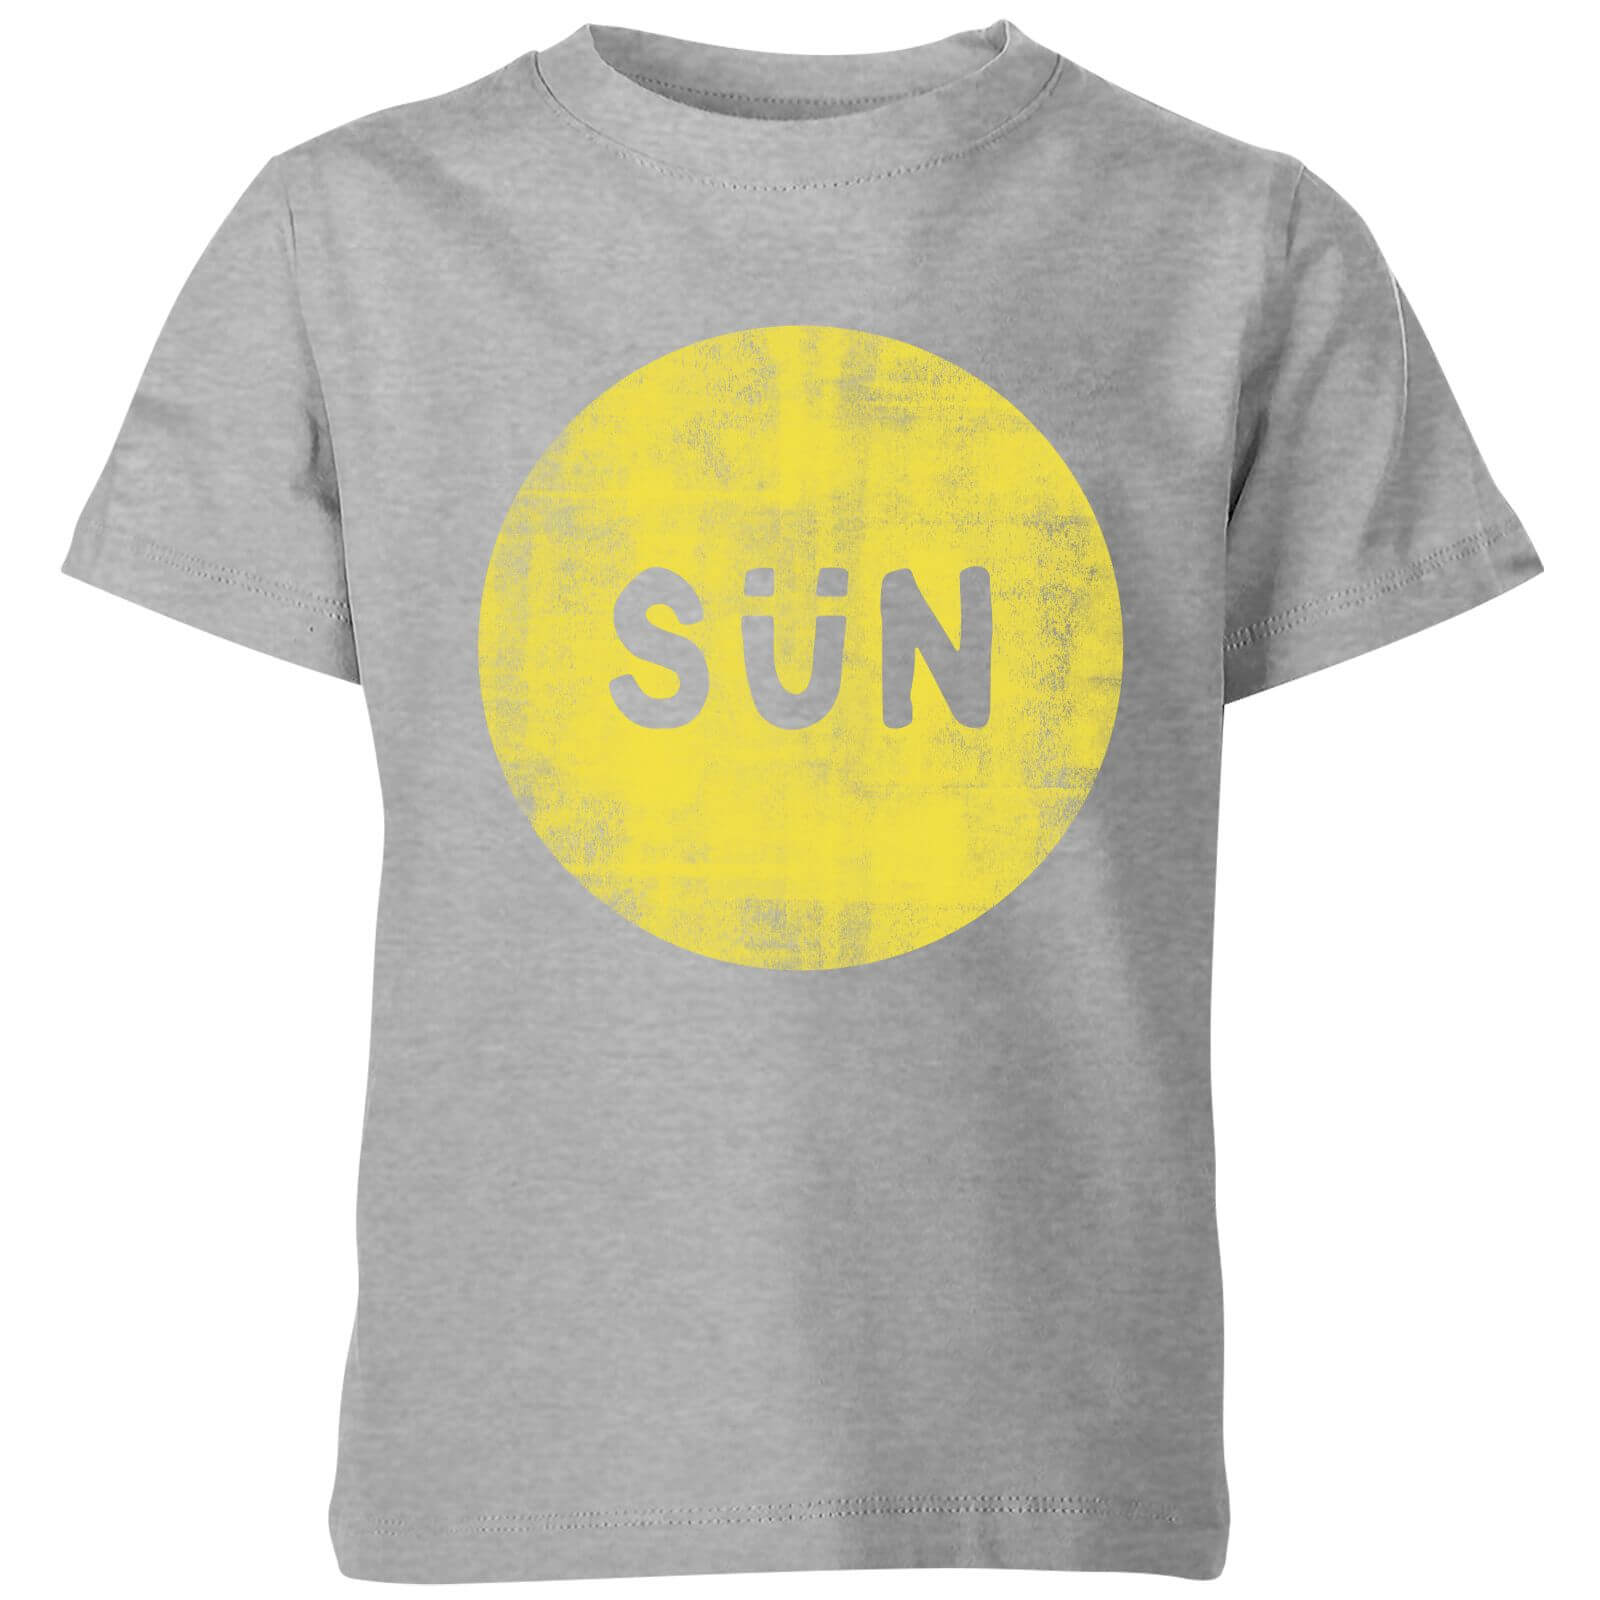 My Little Rascal Sun Kids' T-Shirt - Grey - 3-4 Years - Grey